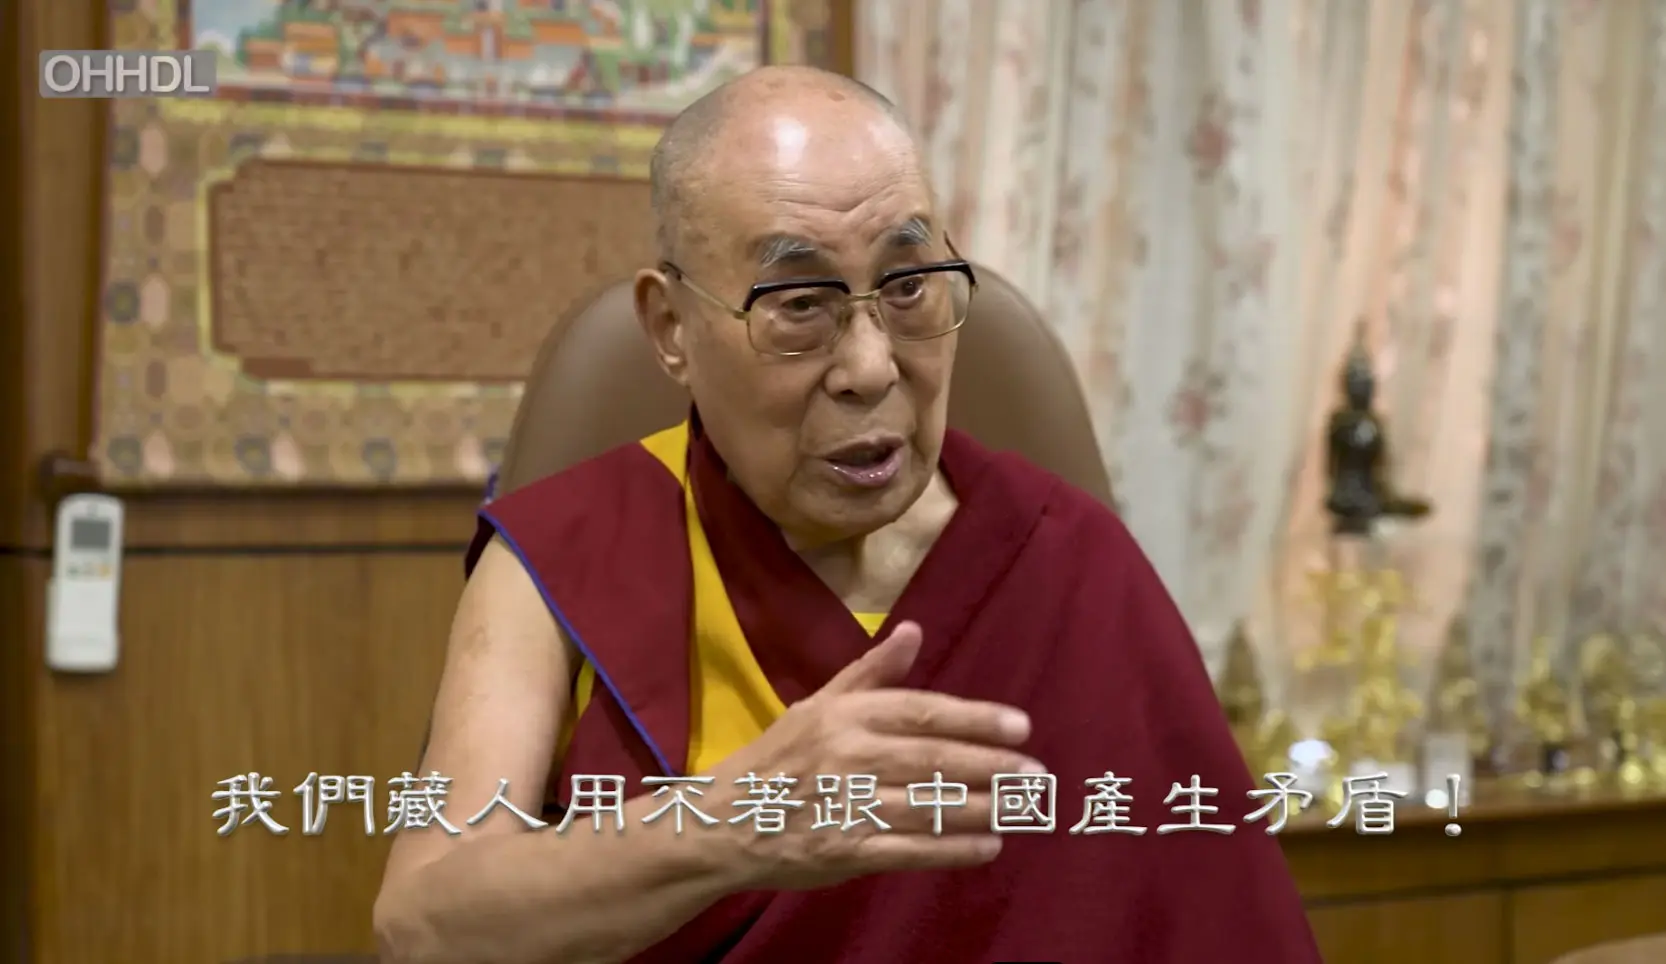 西藏精神领袖达赖喇嘛视讯参与第八届世界国会支持西藏大会。（达赖喇嘛中文官网视频截图）